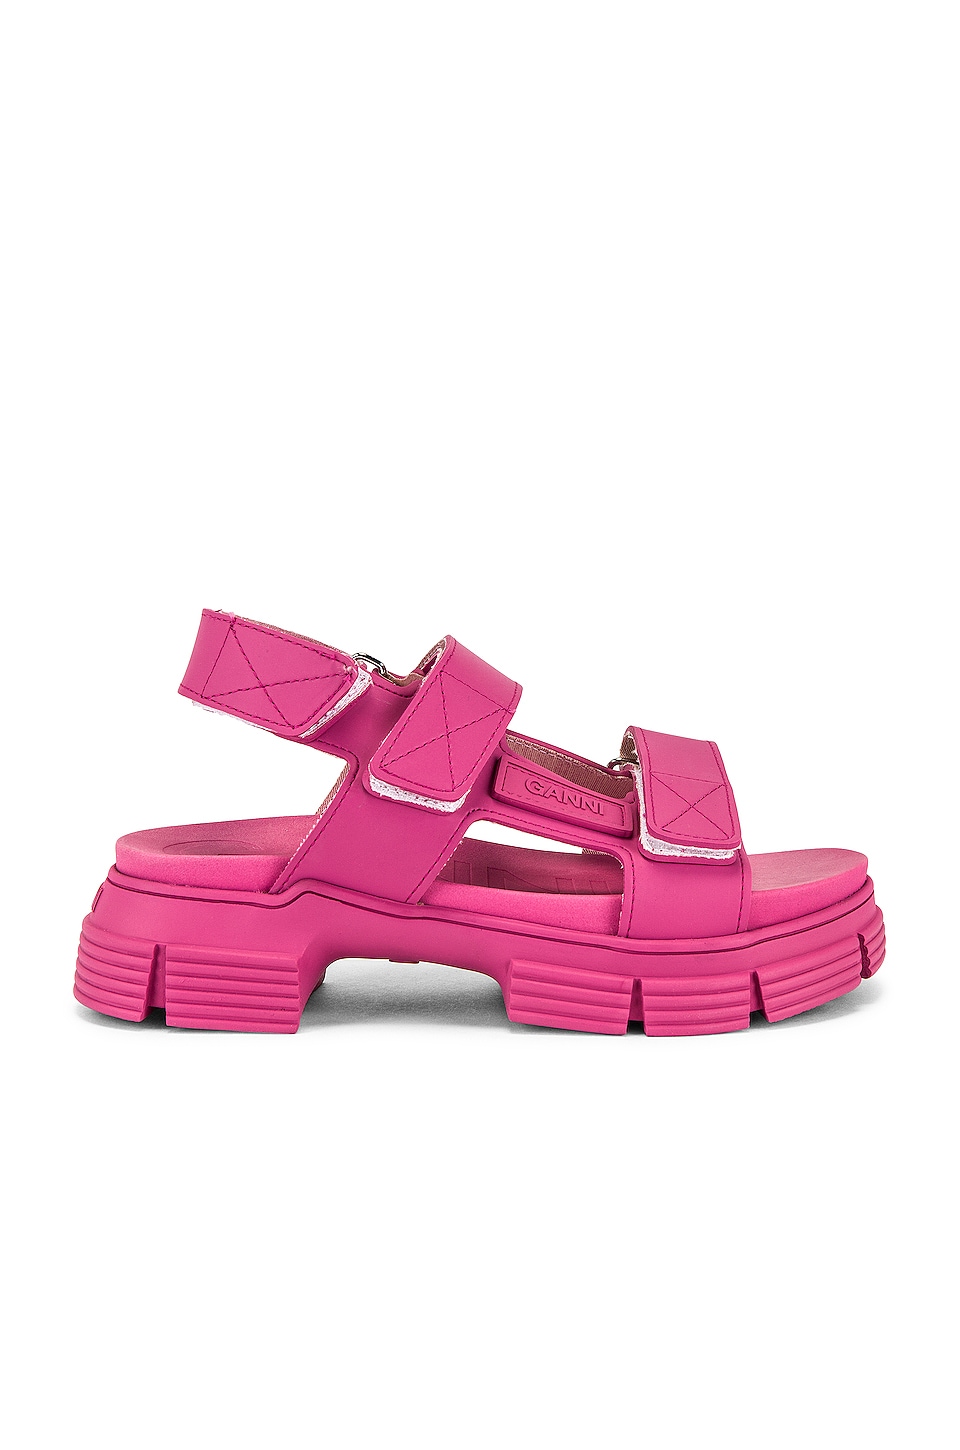 Ganni Sport Sandal in Shocking Pink | REVOLVE